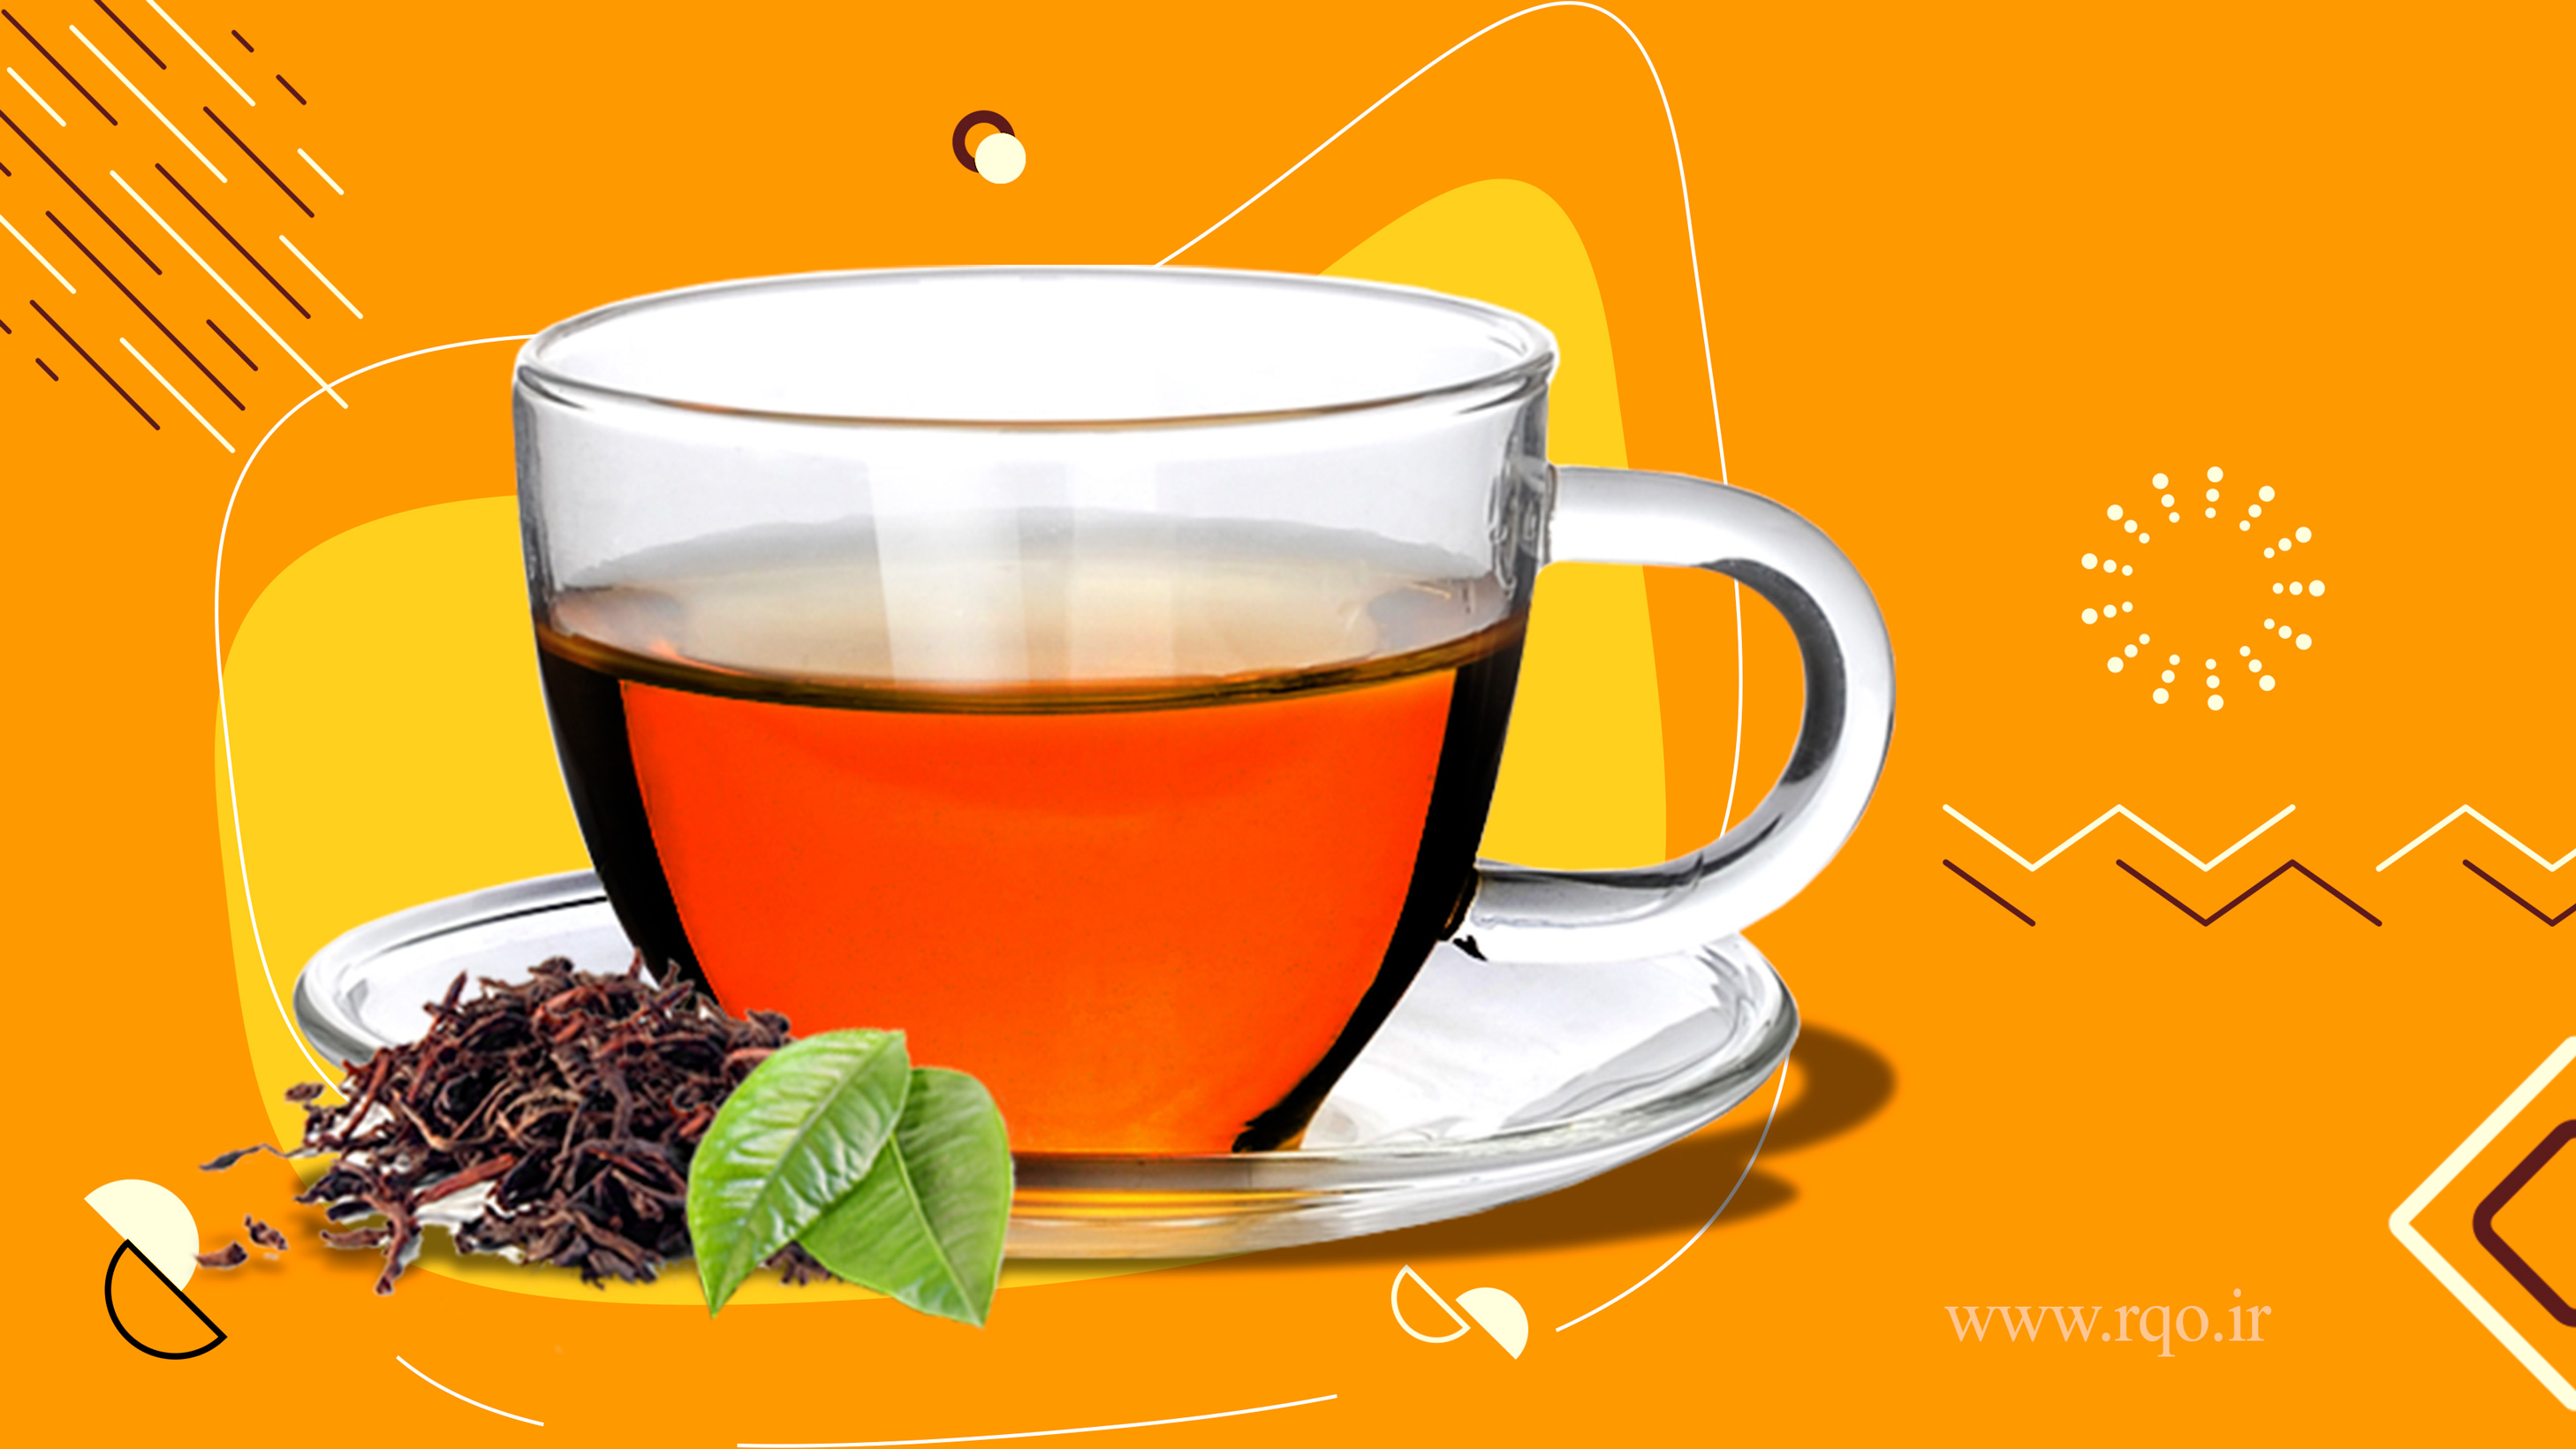 بهترین تولید و عرضه انواع چای سیاه و سبز در فومن 